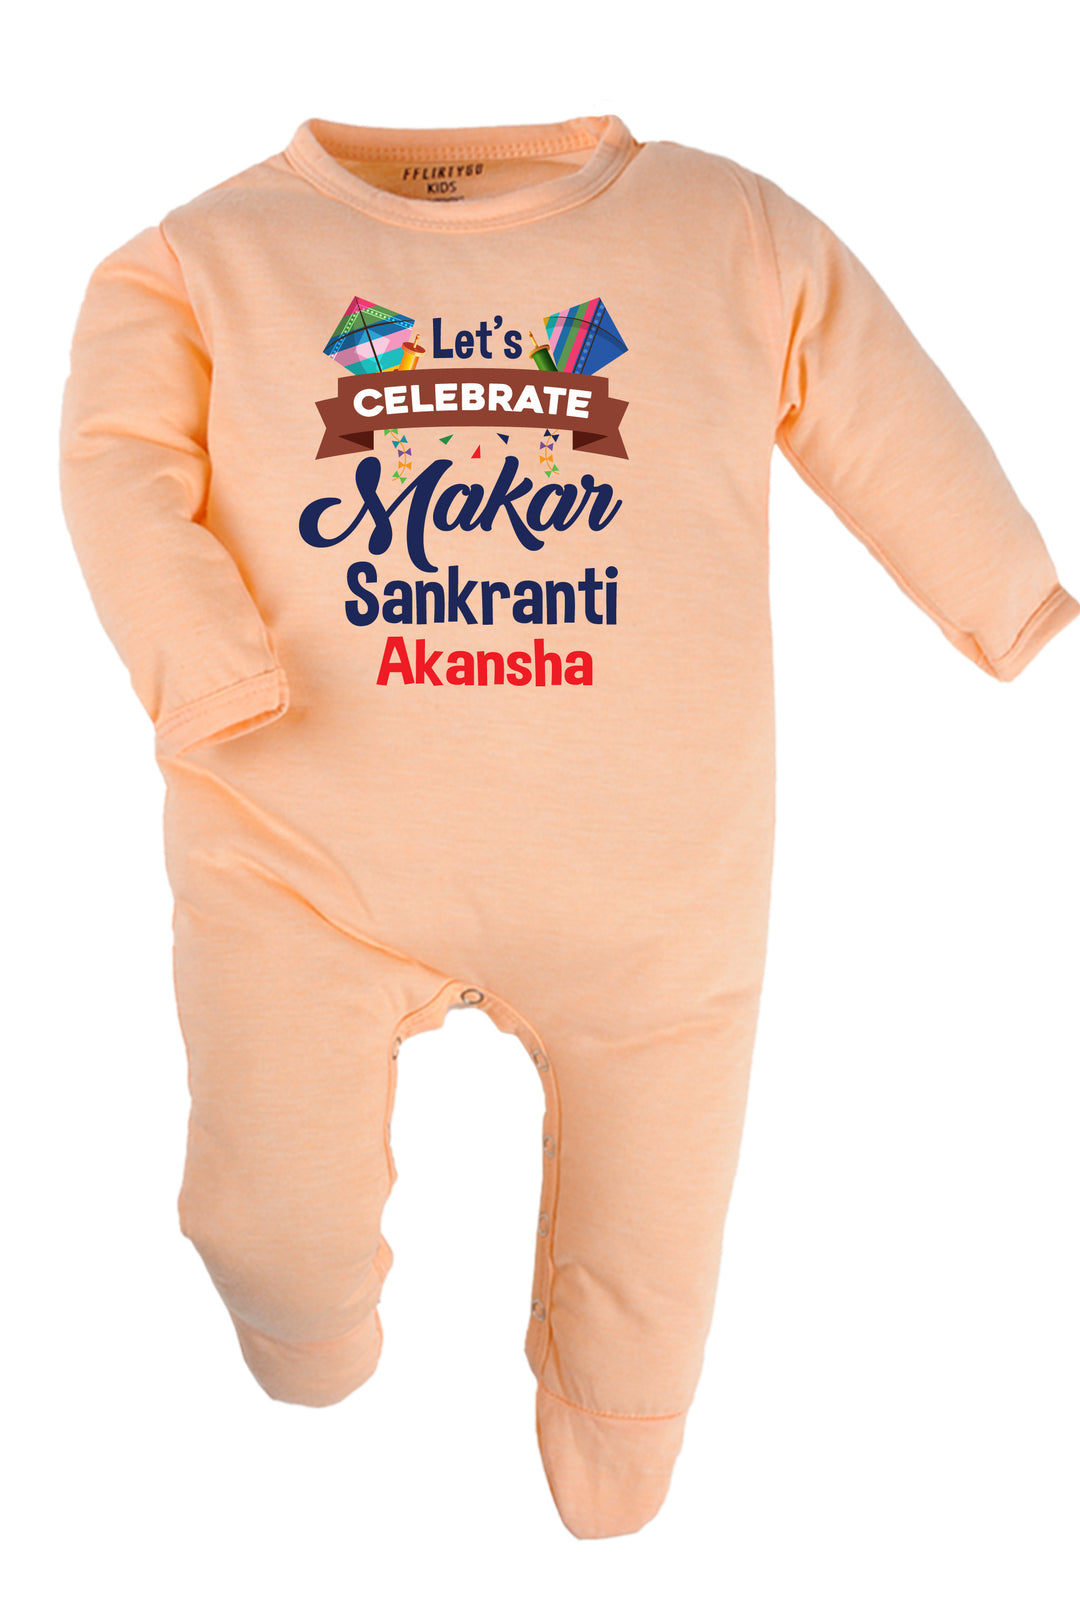 let's Celebrate Makar Sankranti Baby Romper | Onesies w/ Custom Name